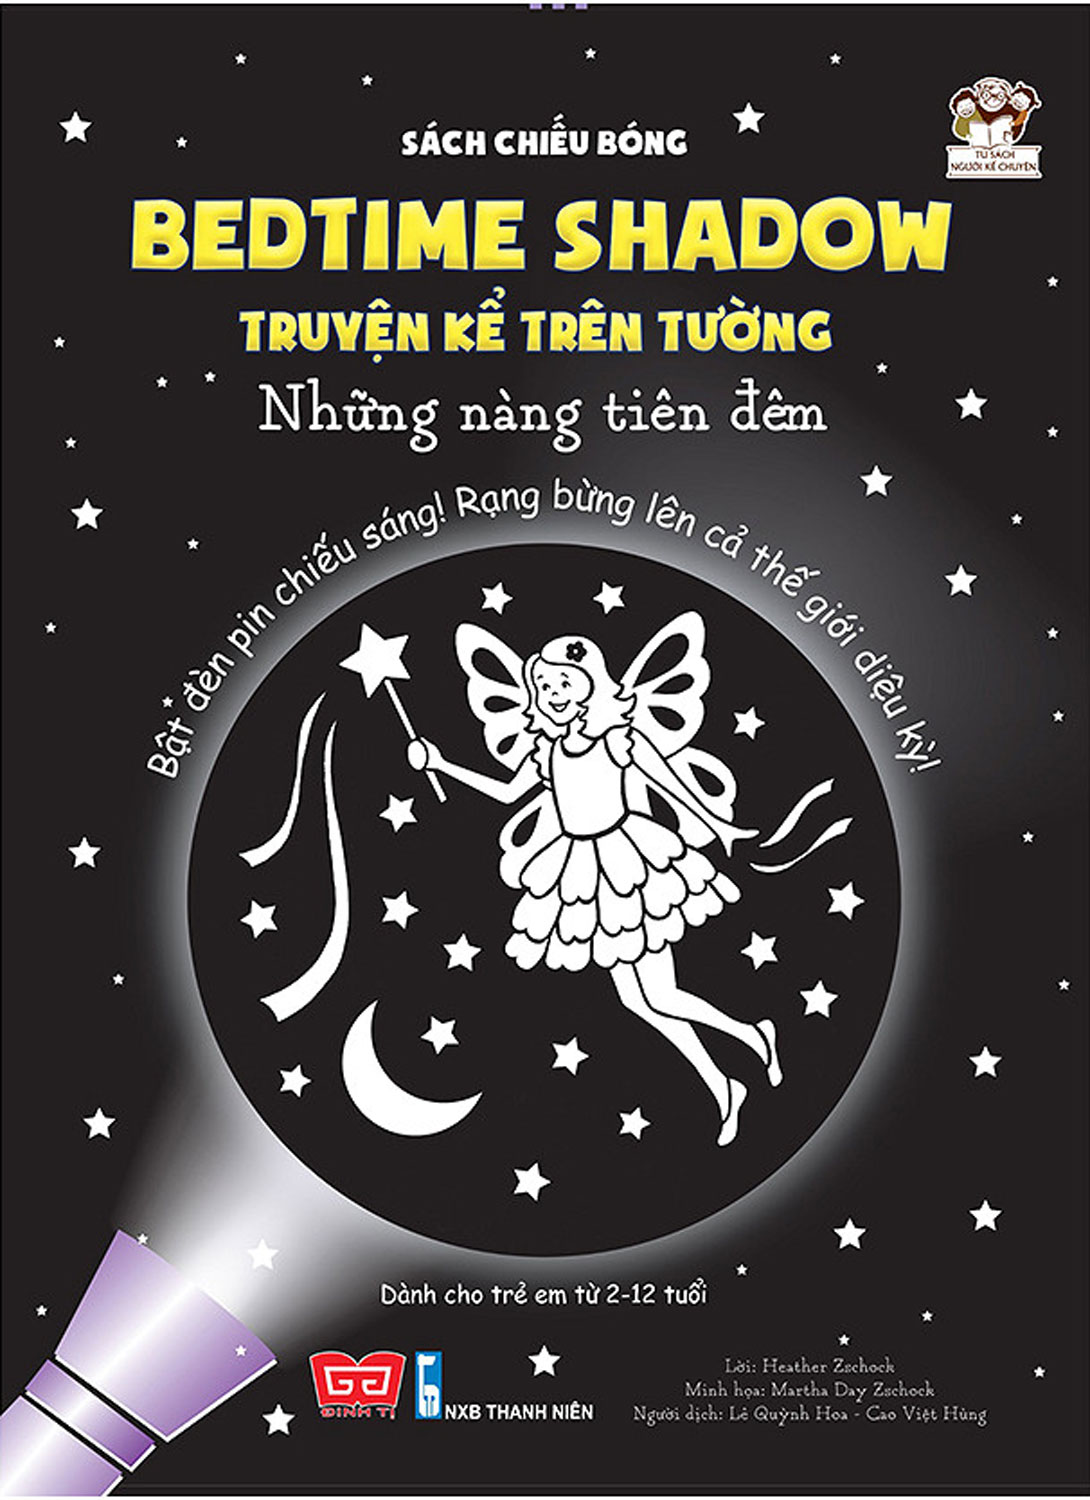 Sách Chiếu Bóng - Bedtime Shadow - Truyện Kể Trên Tường - Những Nàng Tiên Đêm